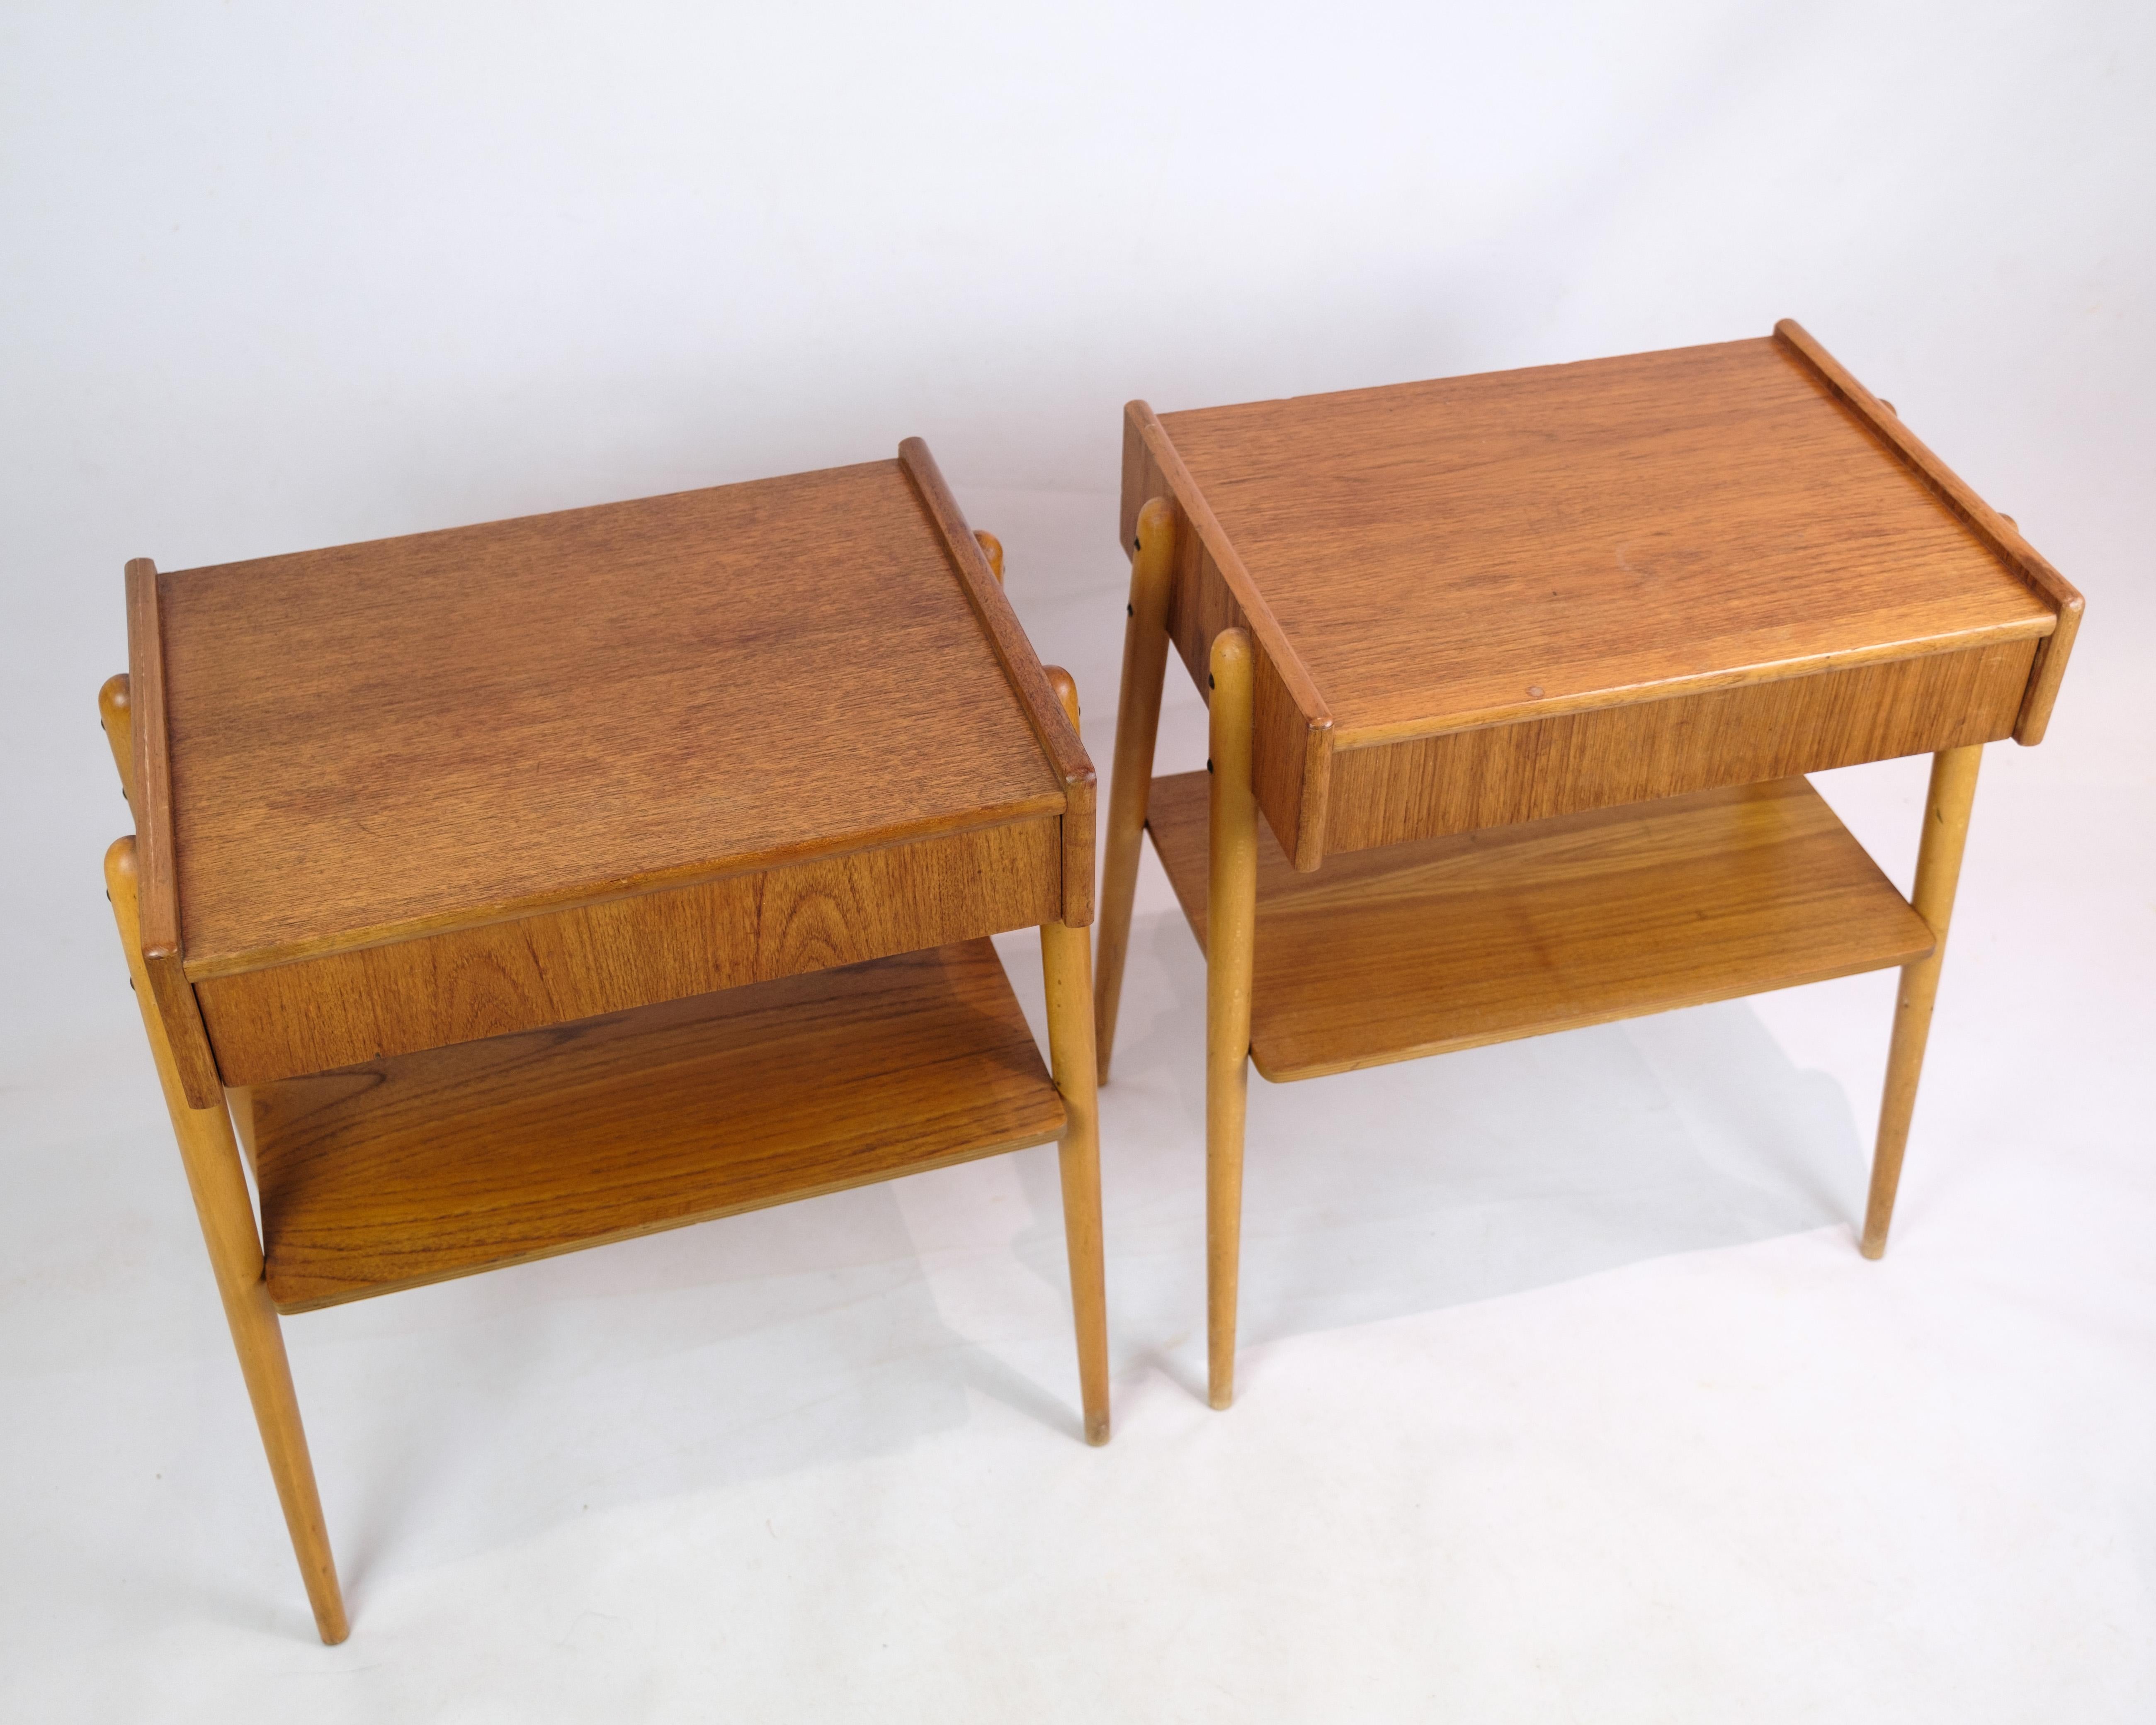 Ensemble de tables de chevet sur pieds avec tiroir et étagère, fabriquées par AB Carlström & Co møbelfabrik en Suède dans les années 1950. Ces tables de chevet représentent le design intemporel et fonctionnel qui caractérise l'art mobilier